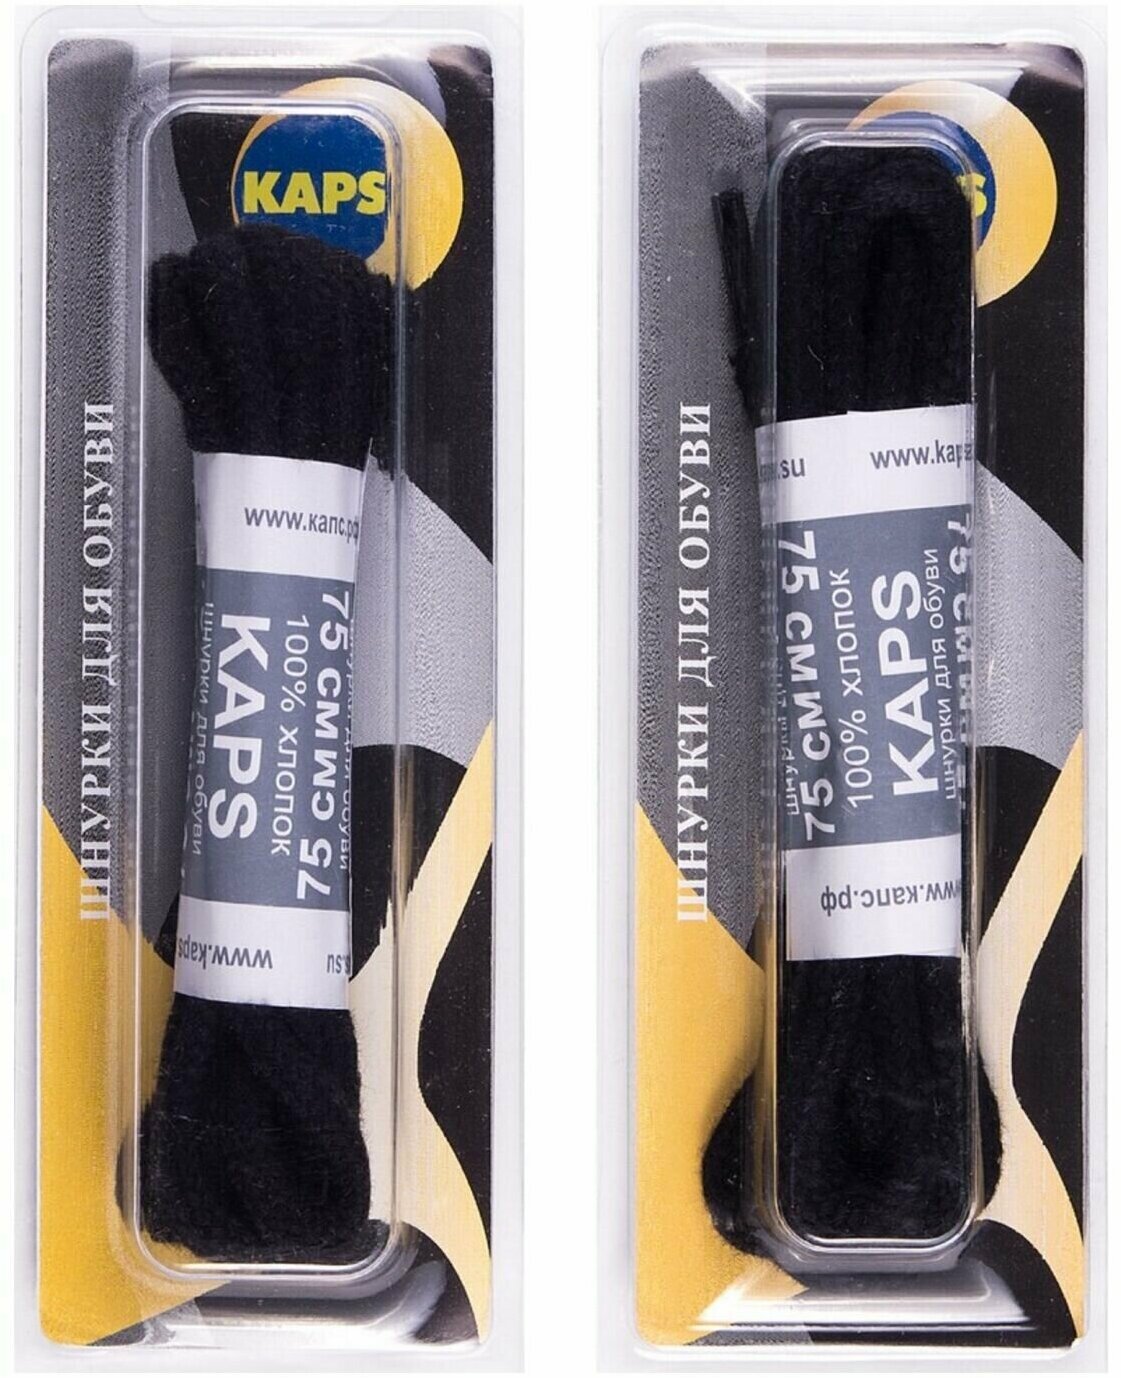 Шнурки Kaps круглые вощёные средние чёрные 75 см (на 8-10 отверстий) 215075/24